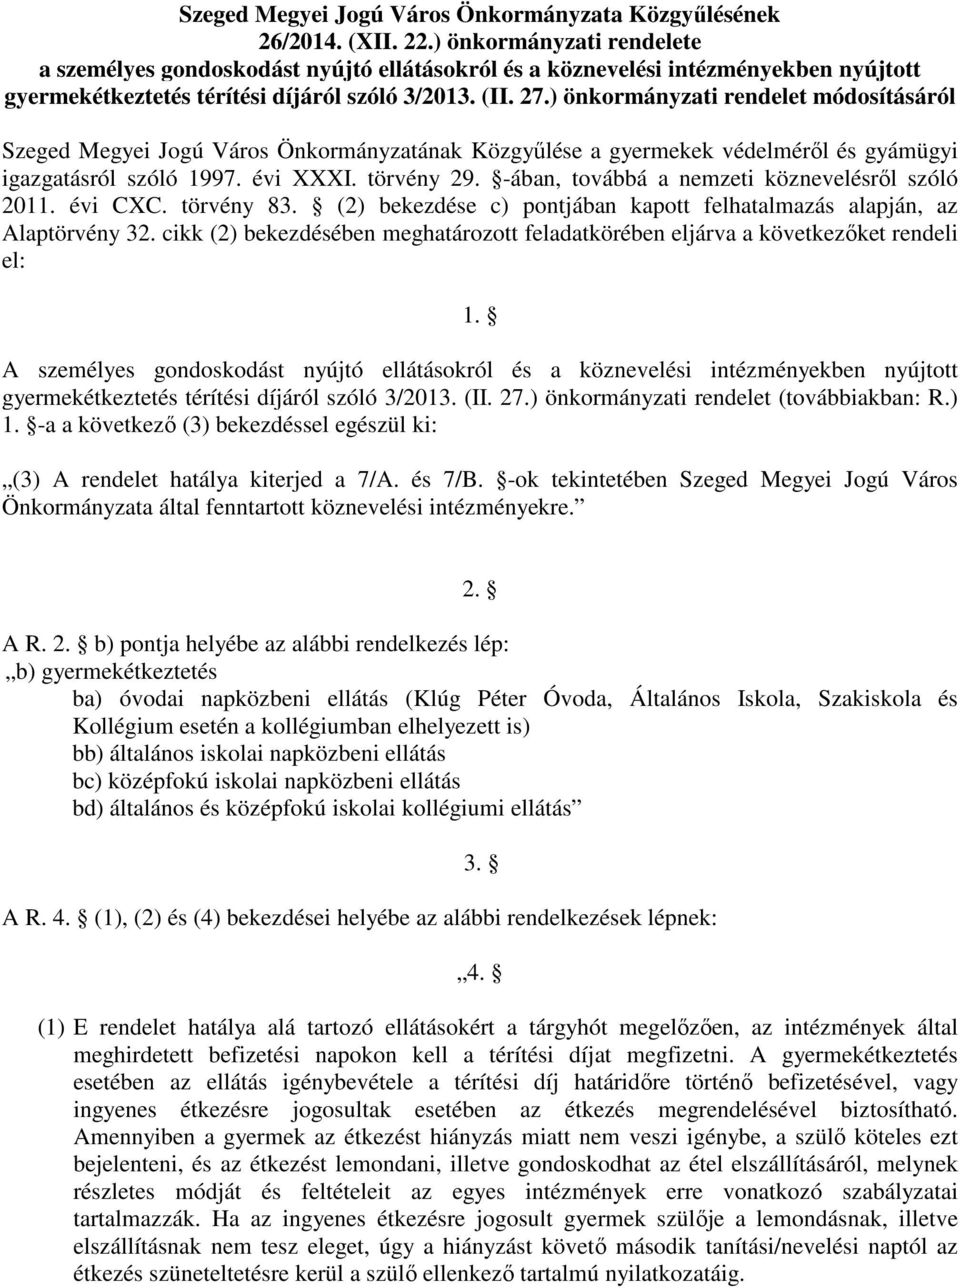 ) önkormányzati rendelet módosításáról Szeged Megyei Jogú Város Önkormányzatának Közgyőlése a gyermekek védelmérıl és gyámügyi igazgatásról szóló 1997. évi XXXI. törvény 29.